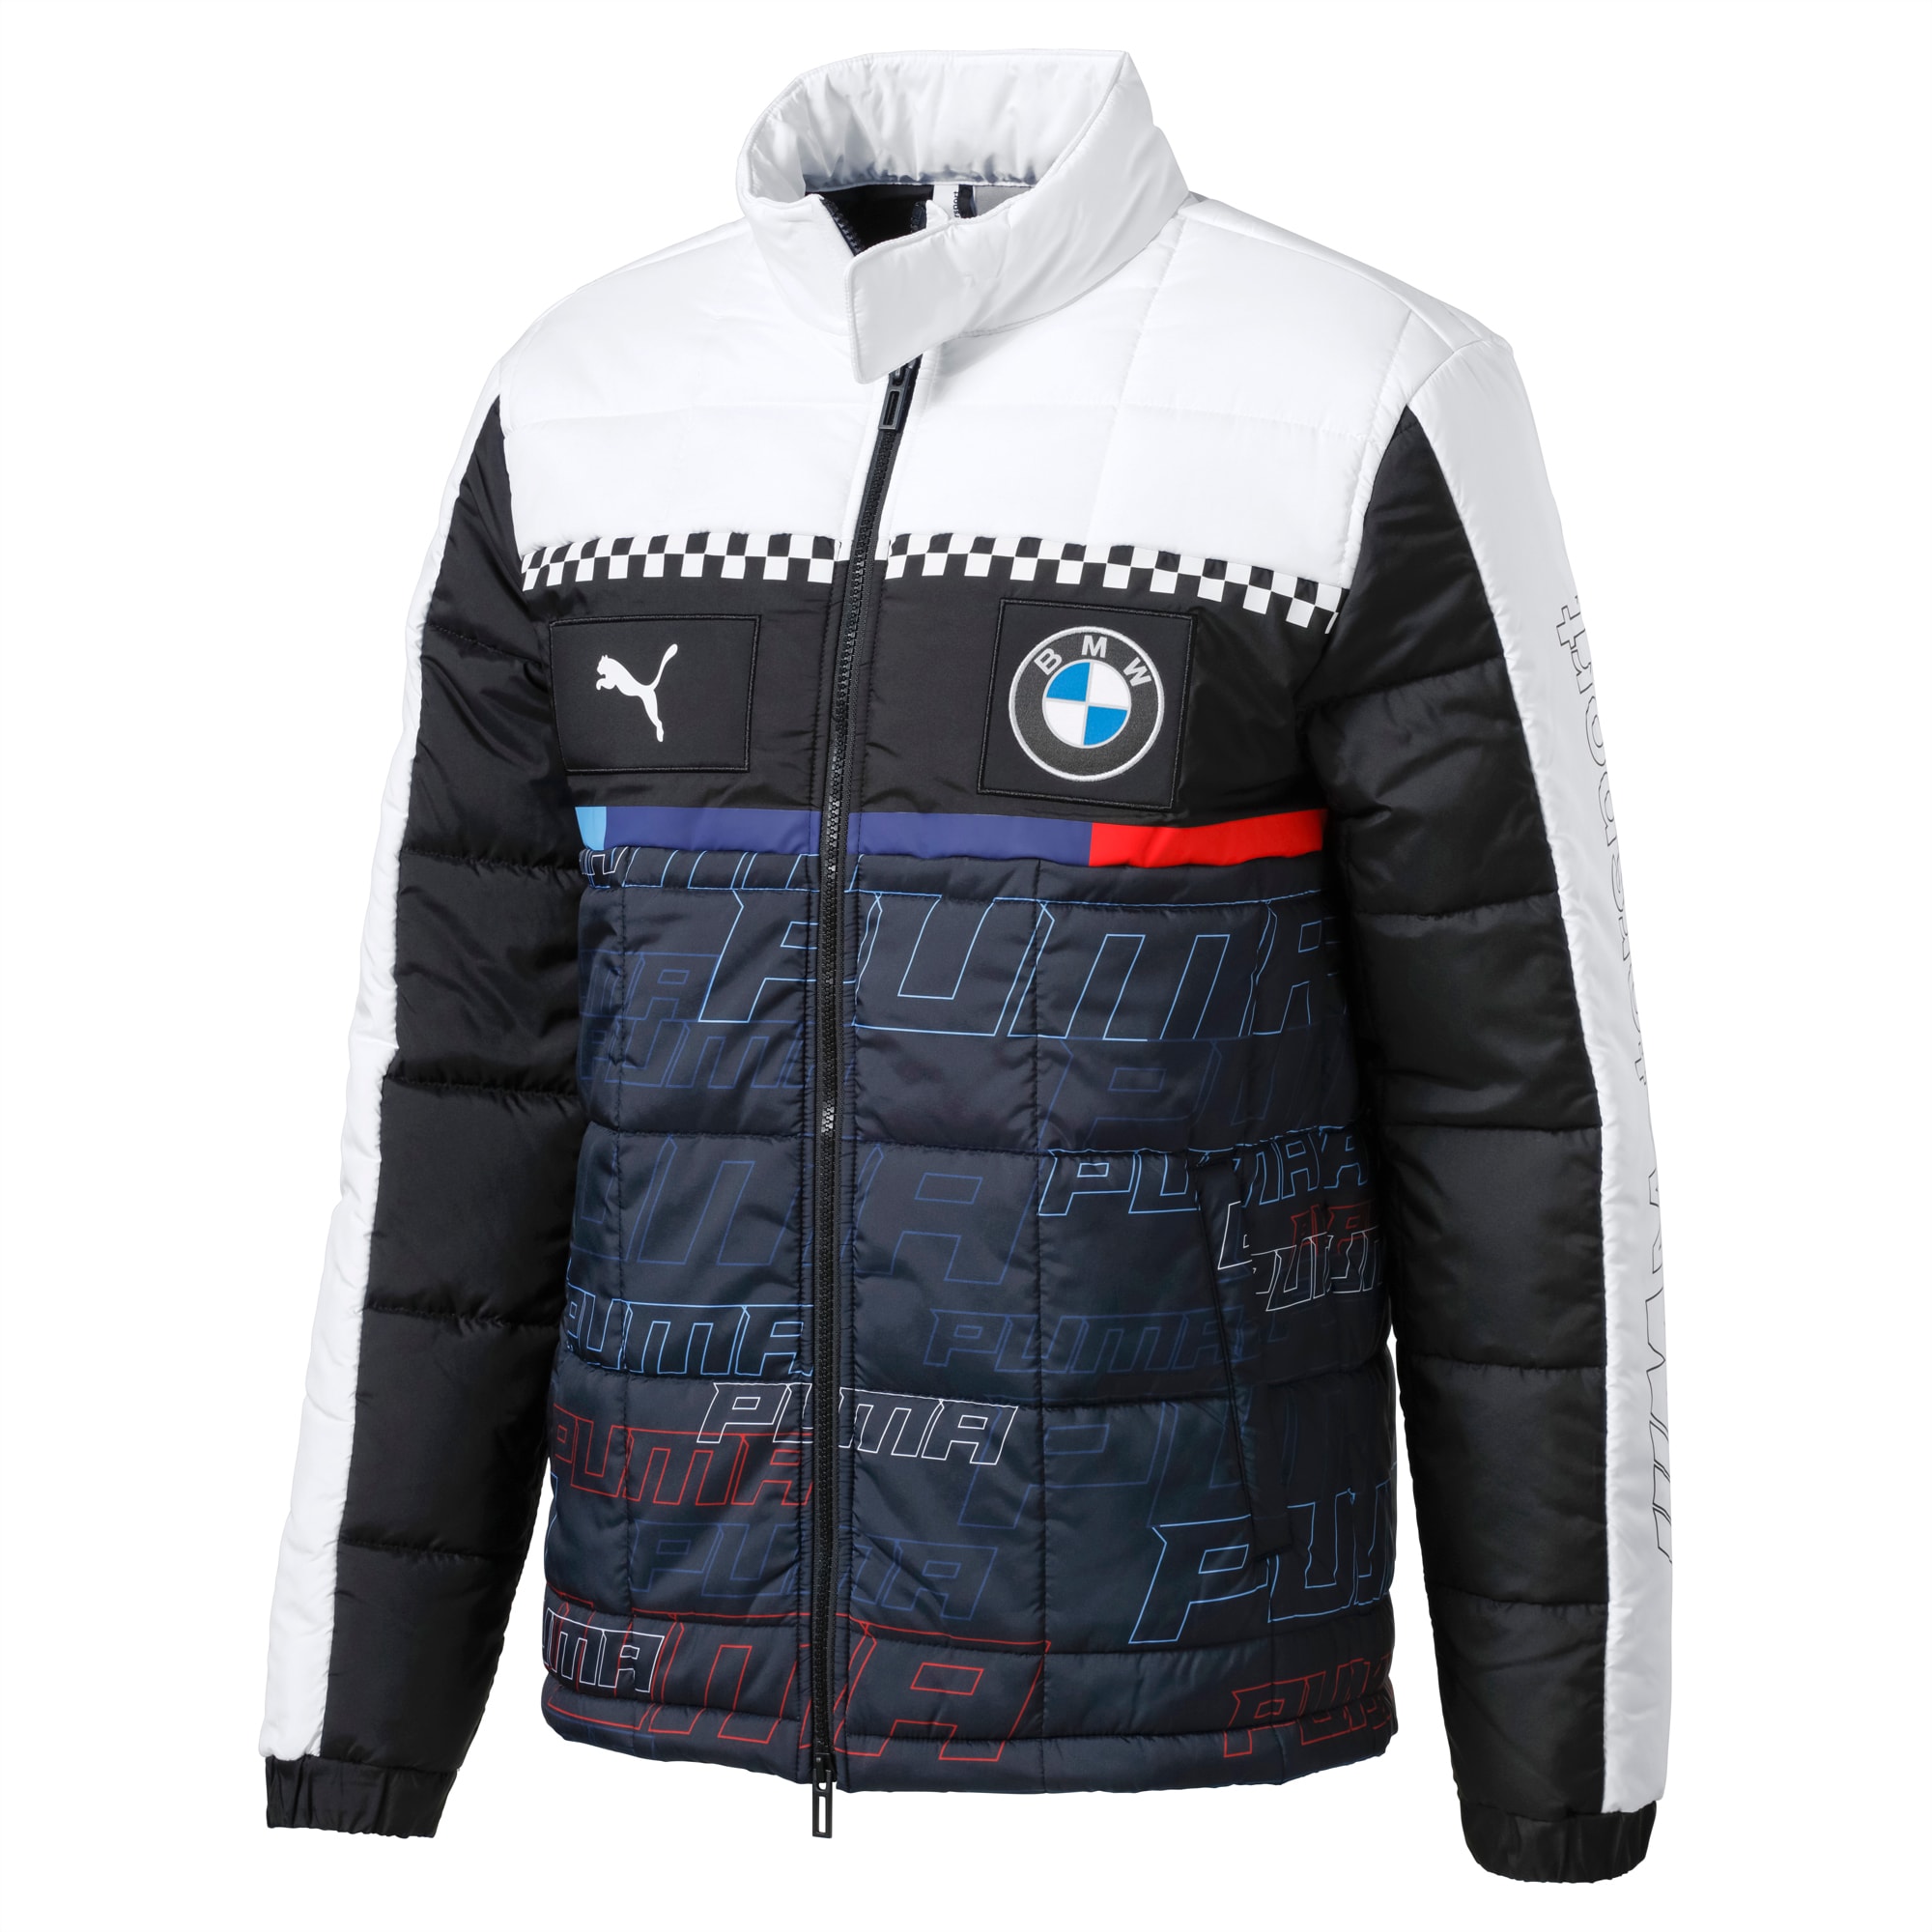 puma racing jacket